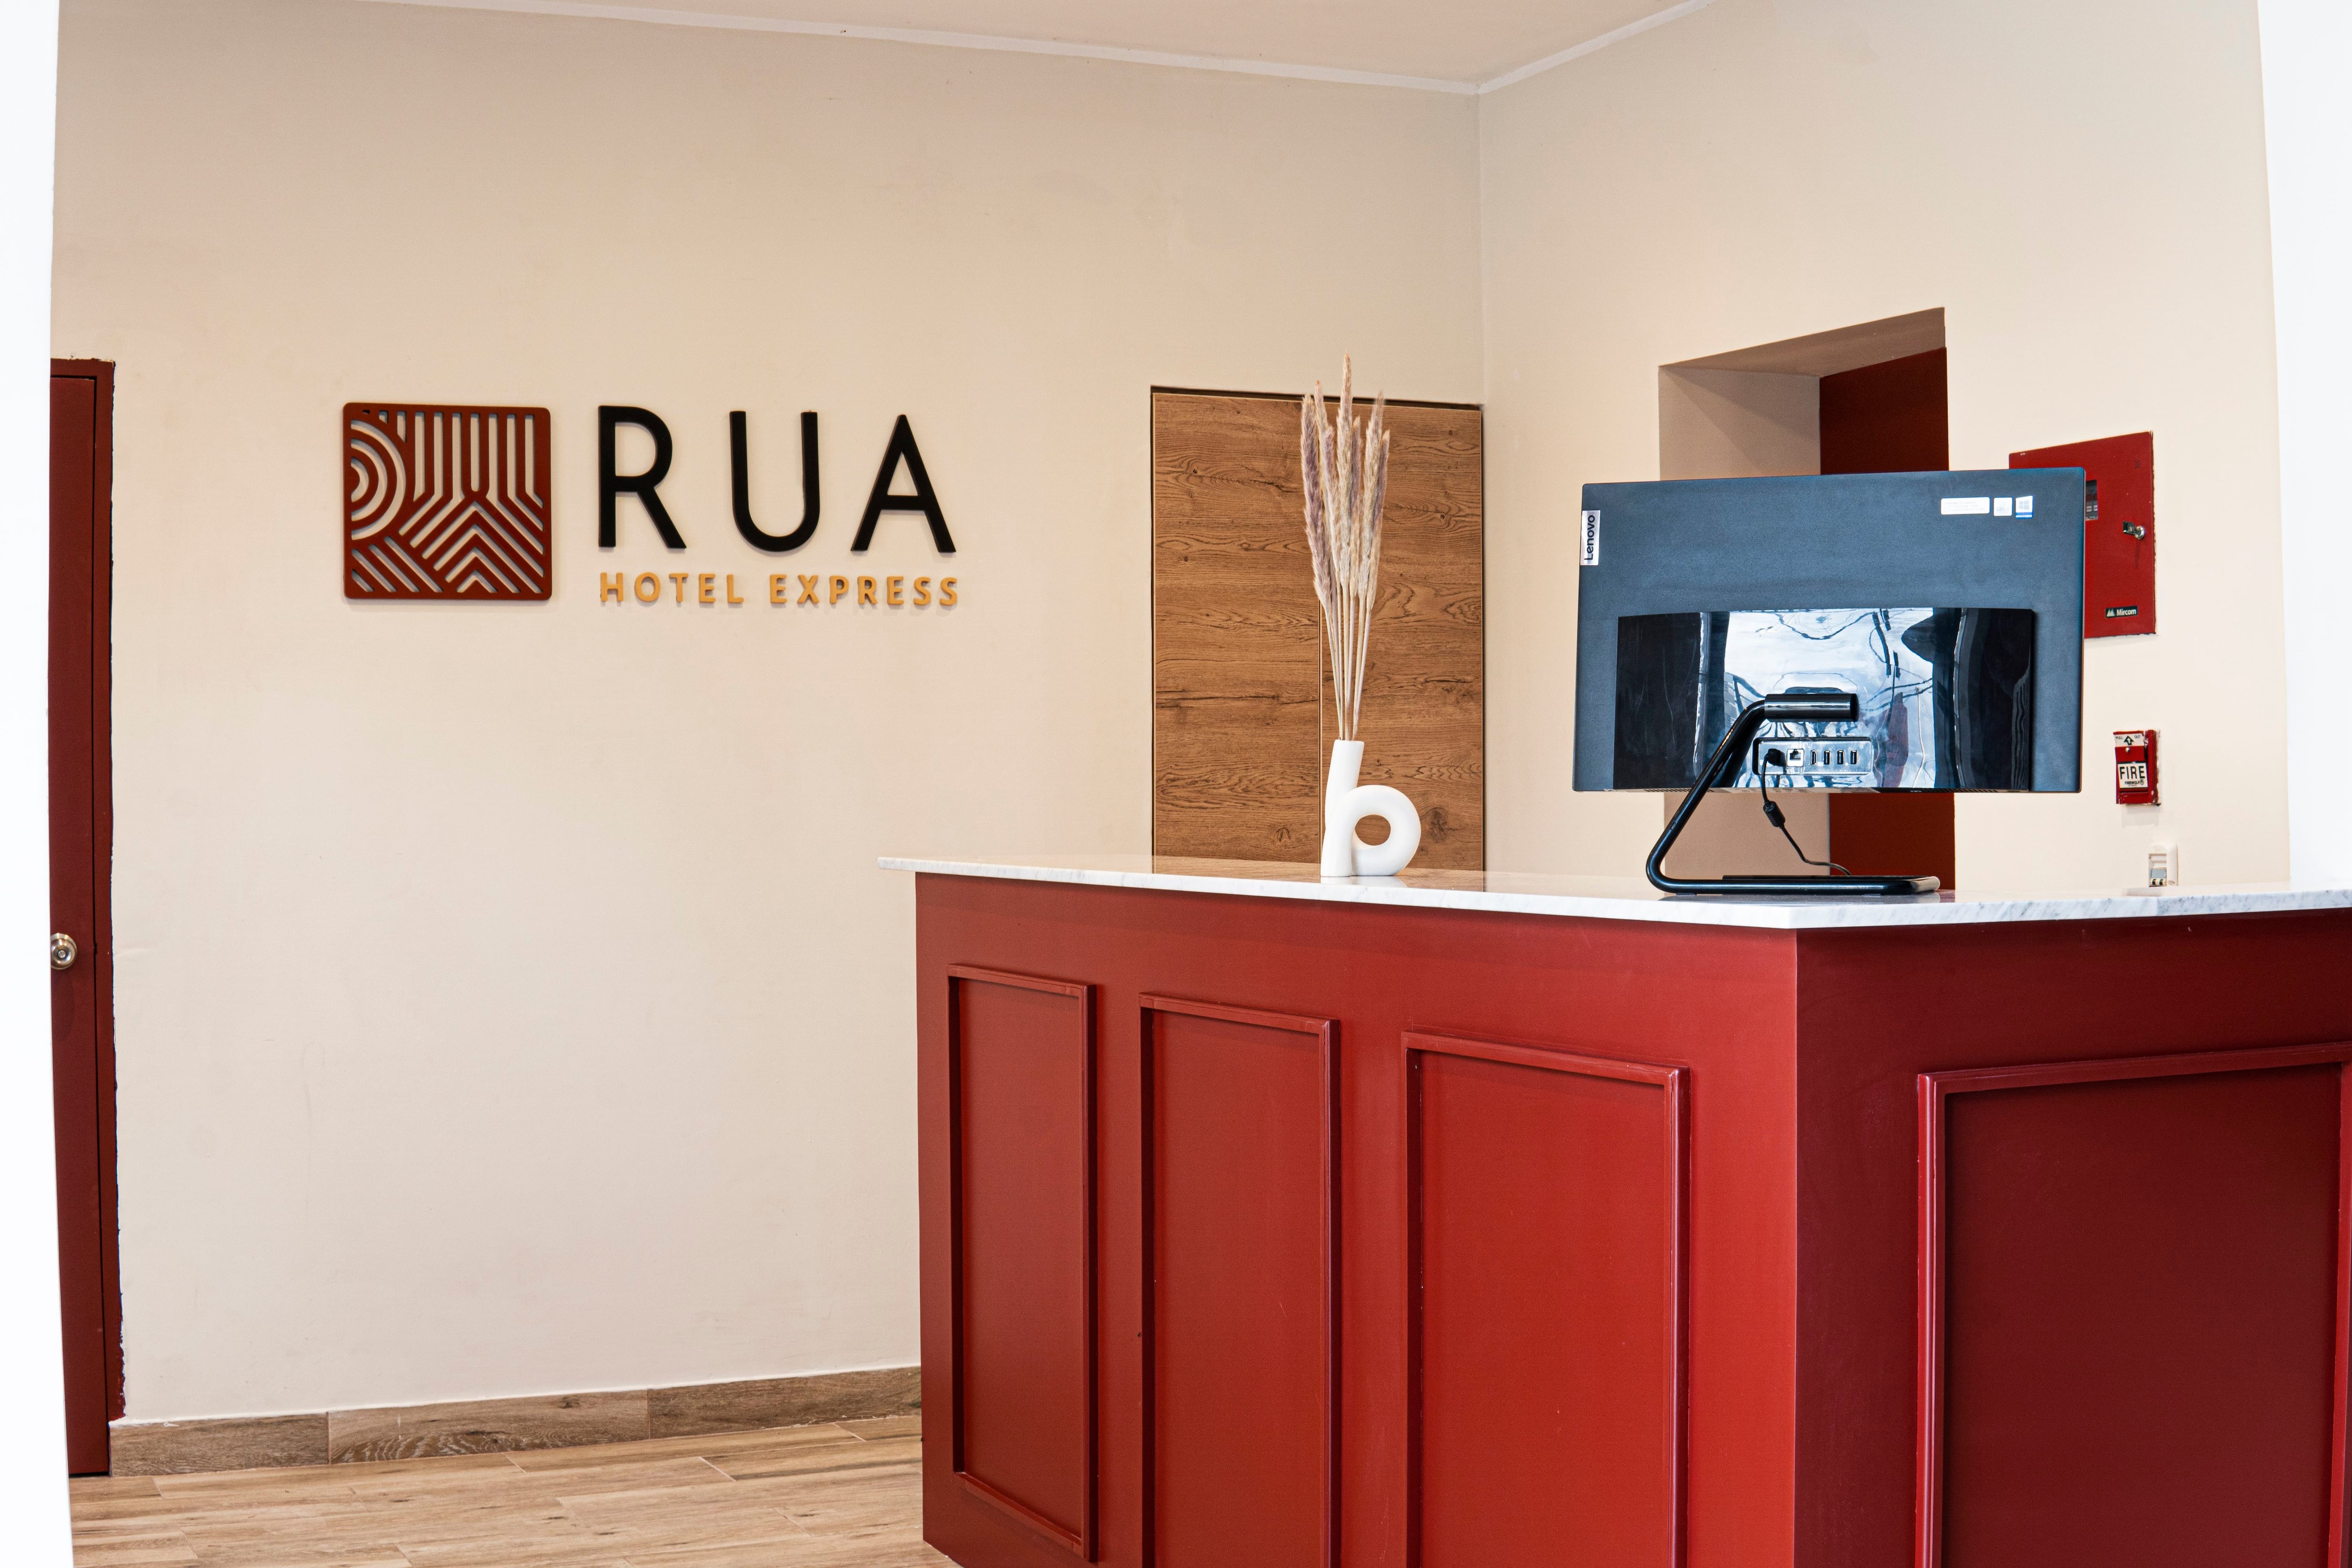 Rua Hoteles abrió establecimiento de formato "express" en Talara y apunta a tres hoteles más en Perú antes de entrar a Lima.